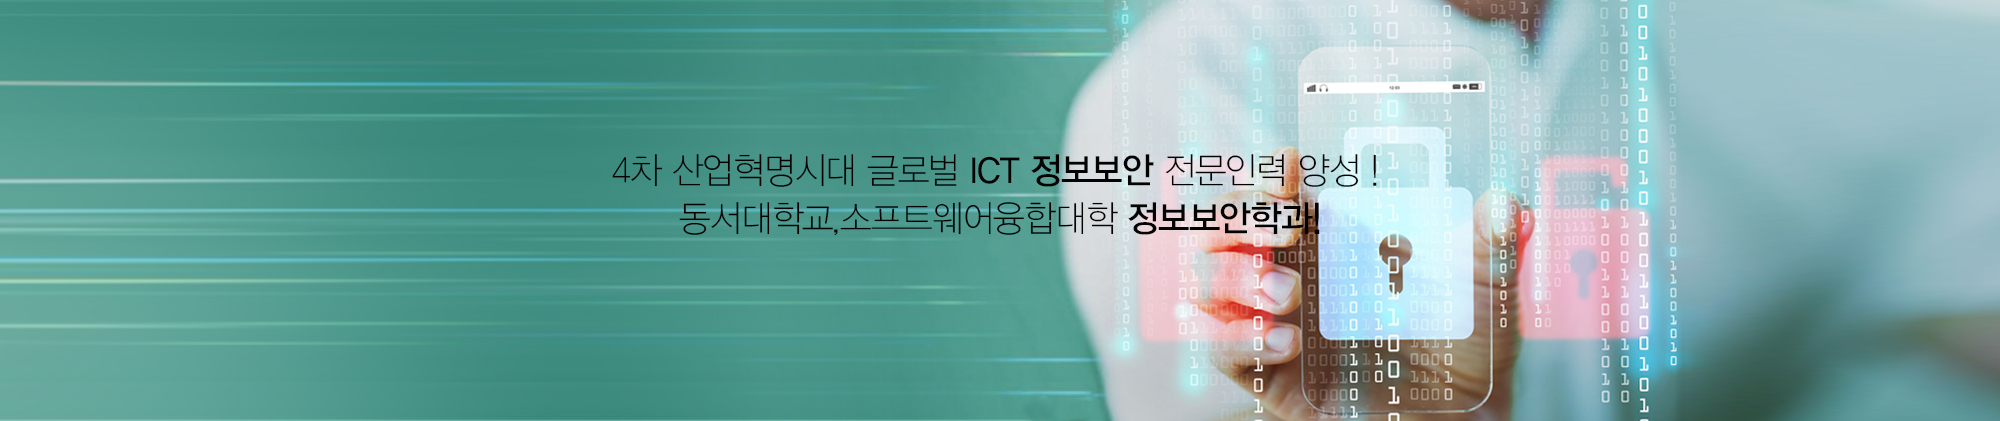 4차산업혁명시대 글로벌 ICT 정보보안 전문인력 양성